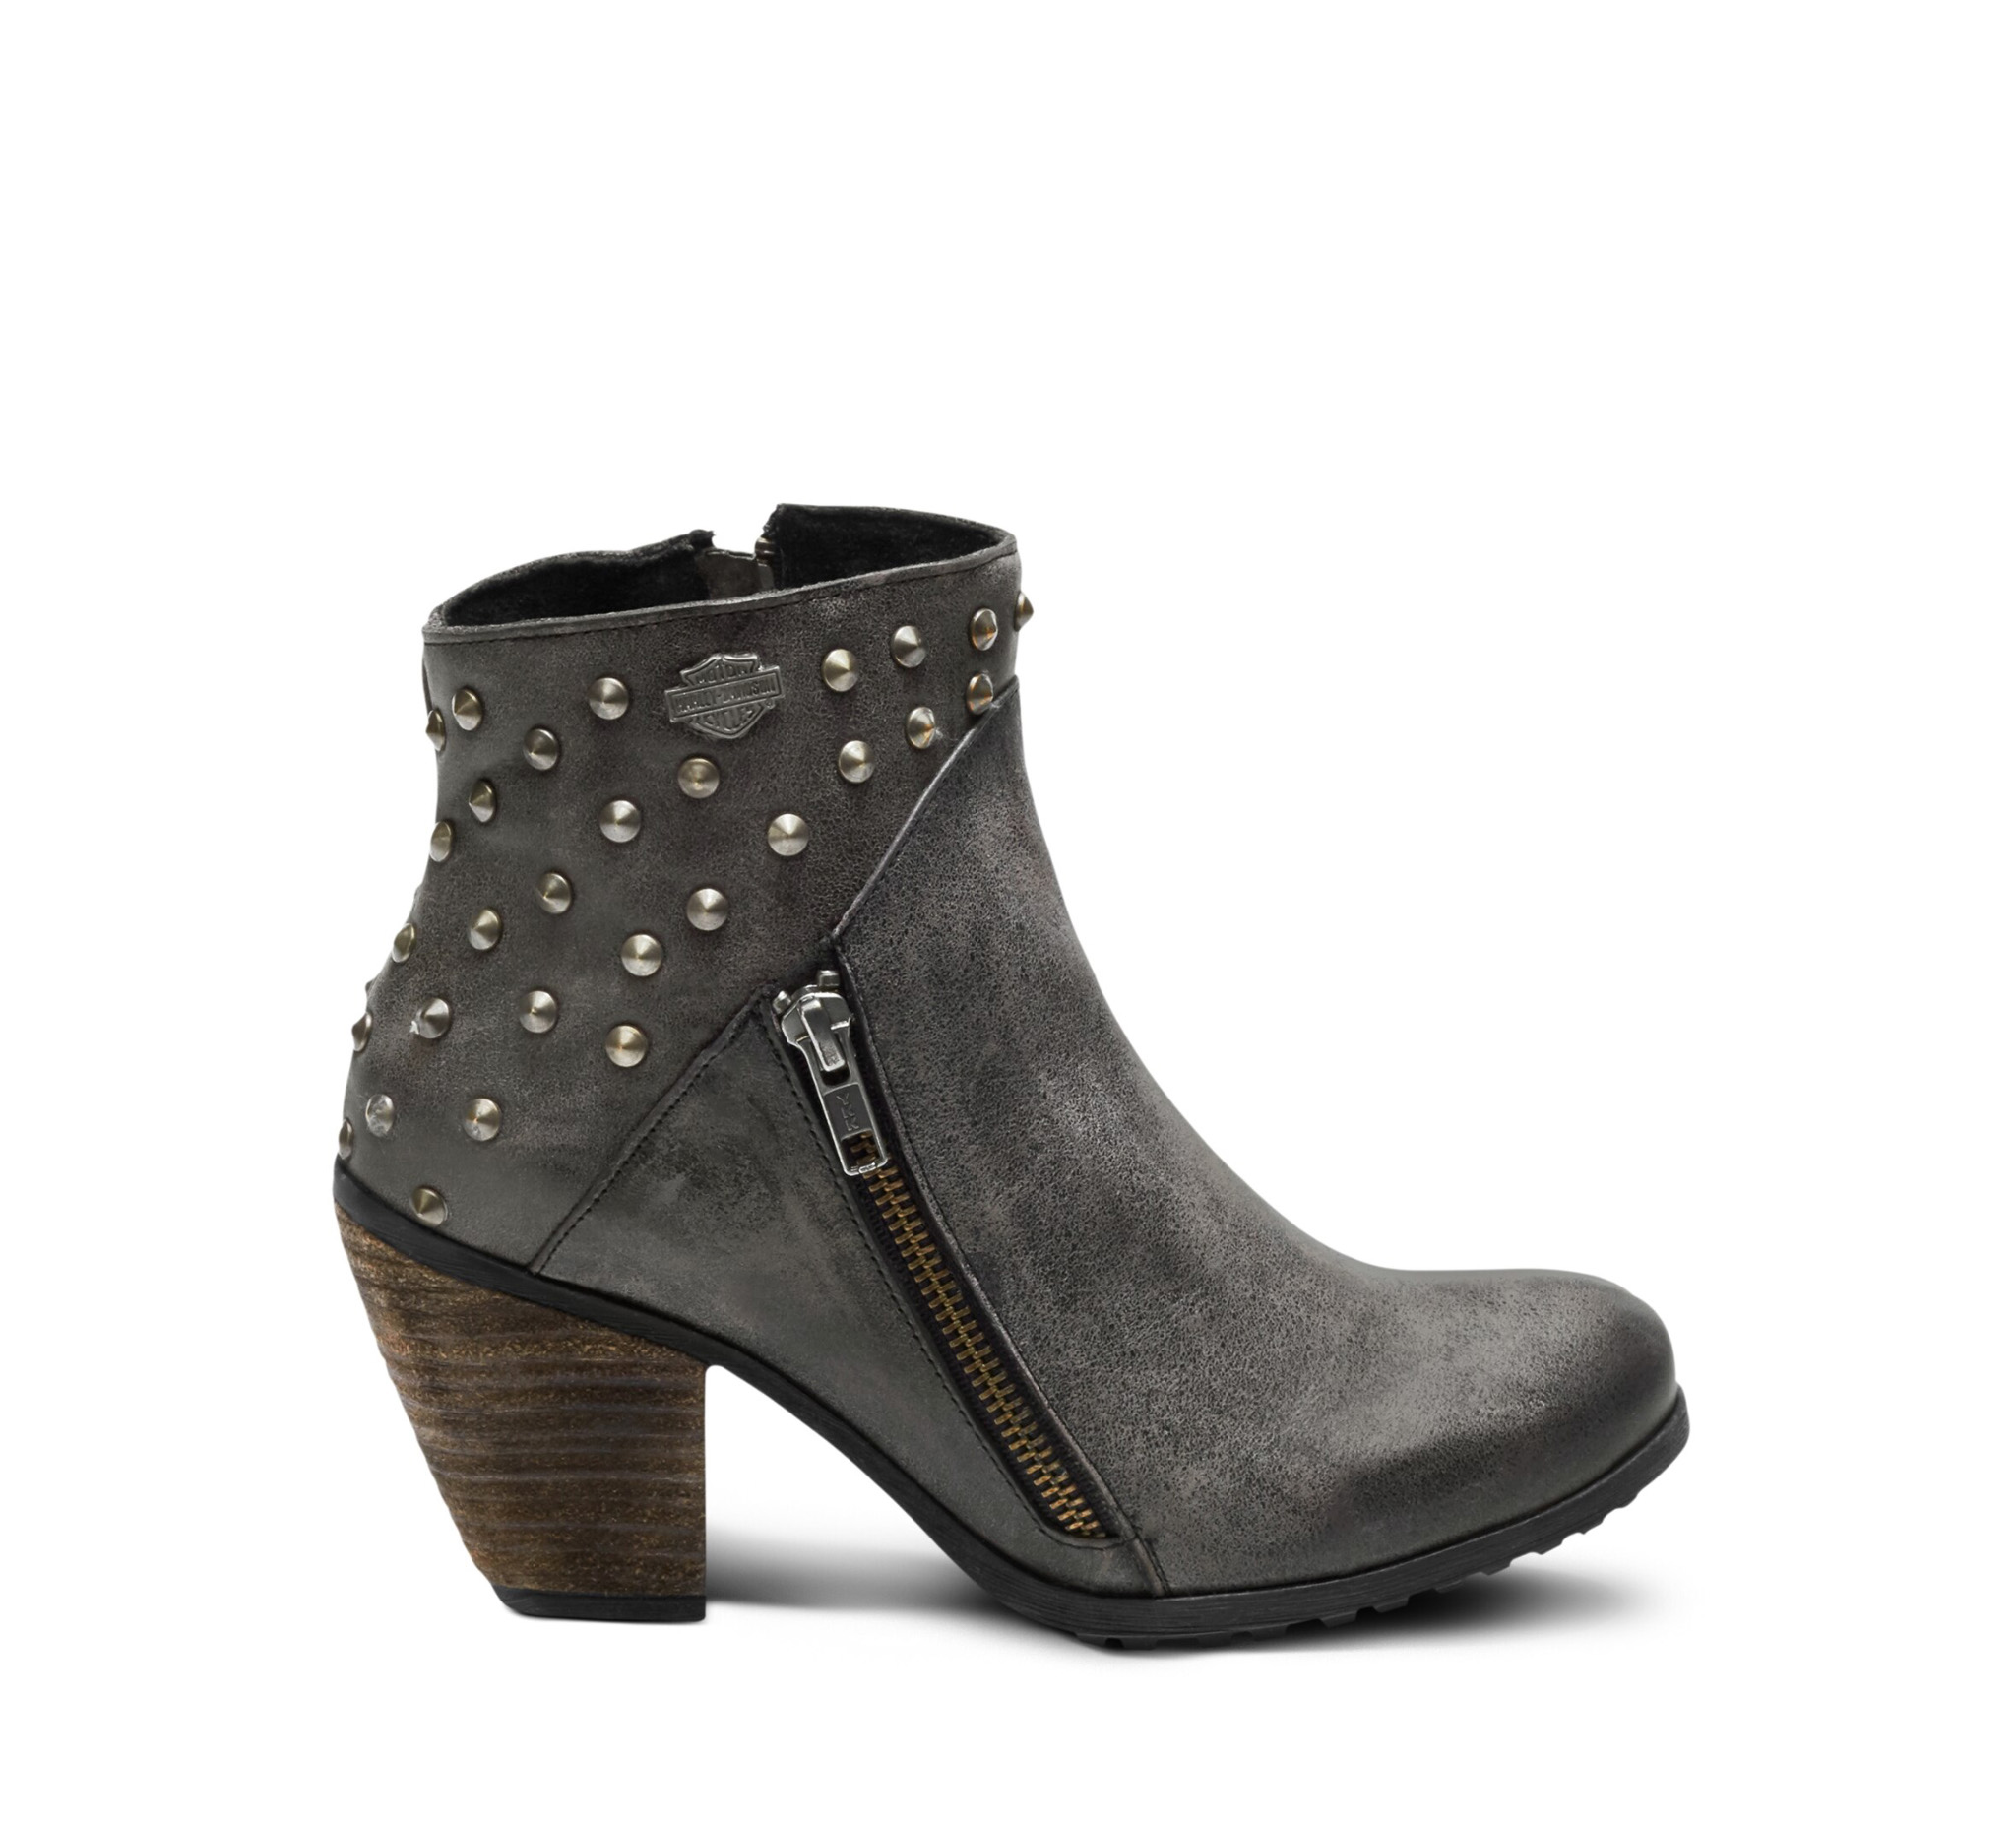 women's grey boots